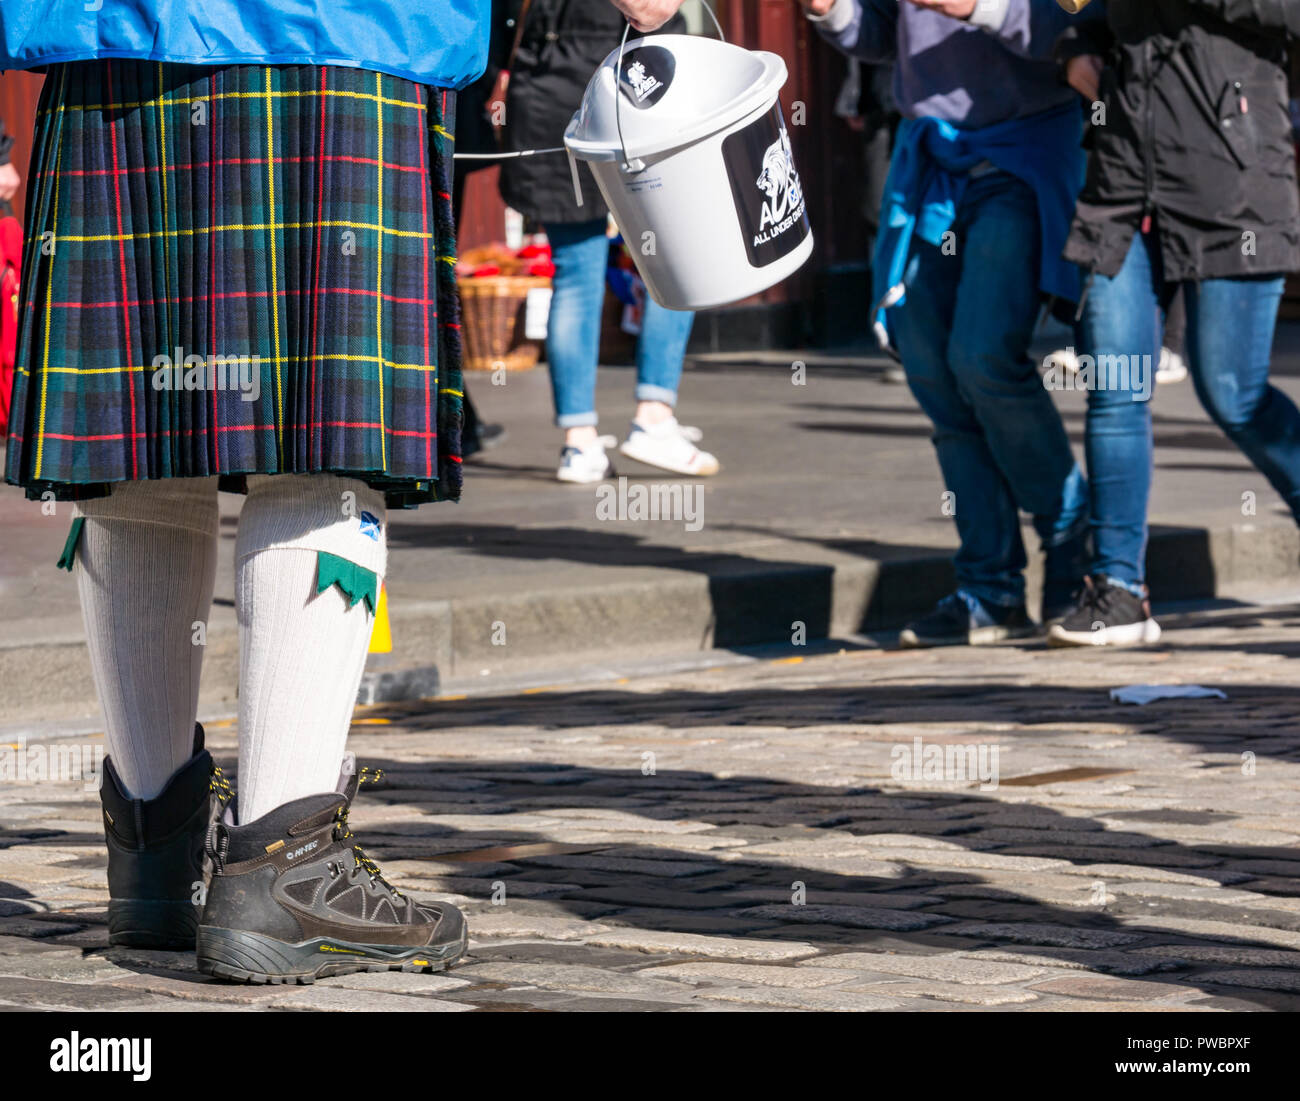 Uomo in kilt a raccogliere donazioni per tutti sotto uno striscione AUOB indipendenza scozzese marzo 2018, Royal Mile di Edimburgo, Scozia, Regno Unito Foto Stock